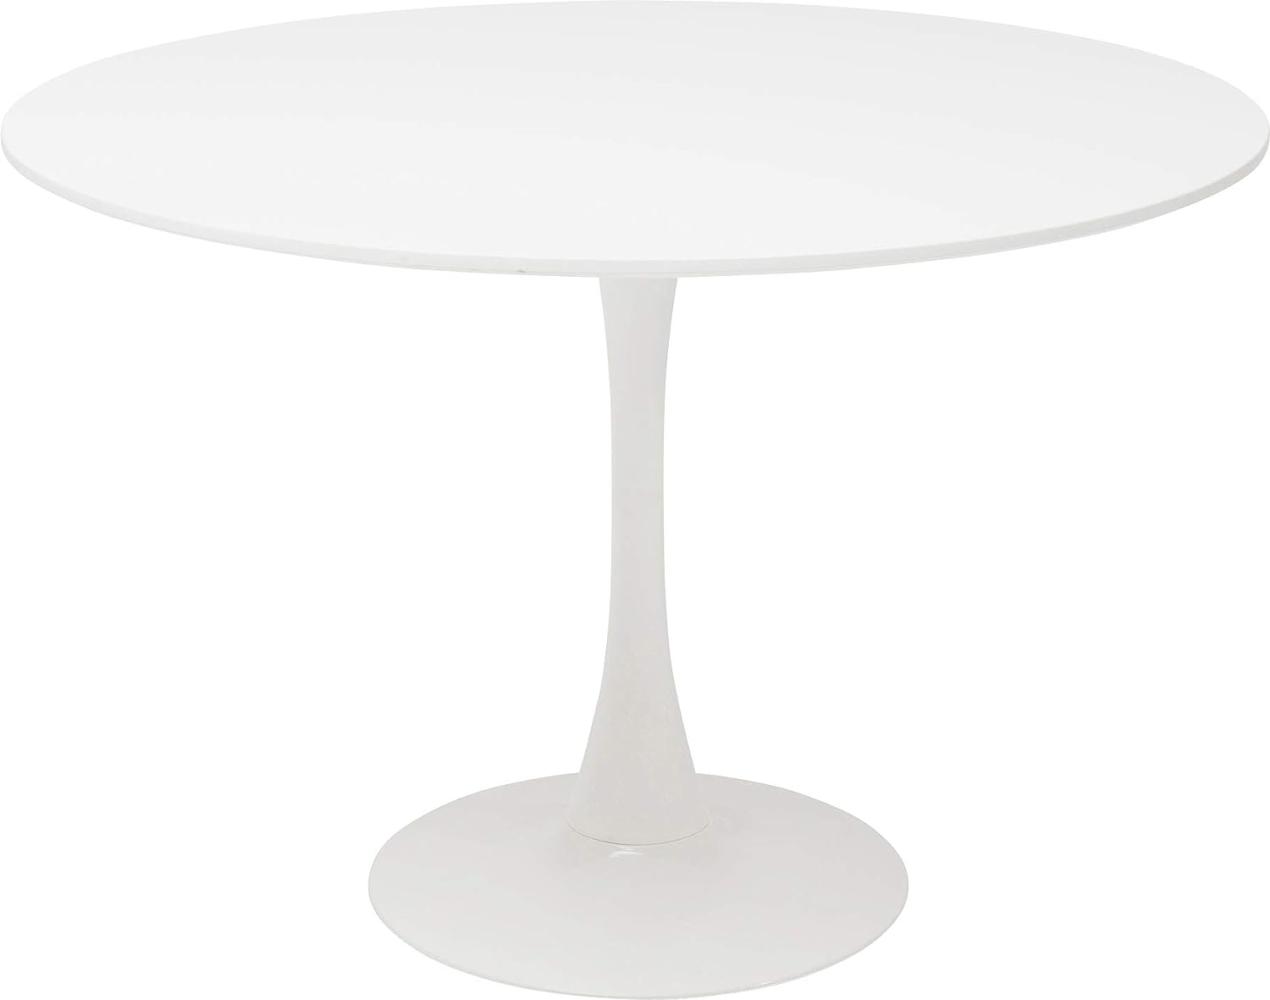 Kare Design Tisch Schickeria Weiß Ø110, 74x110x110cm Bild 1